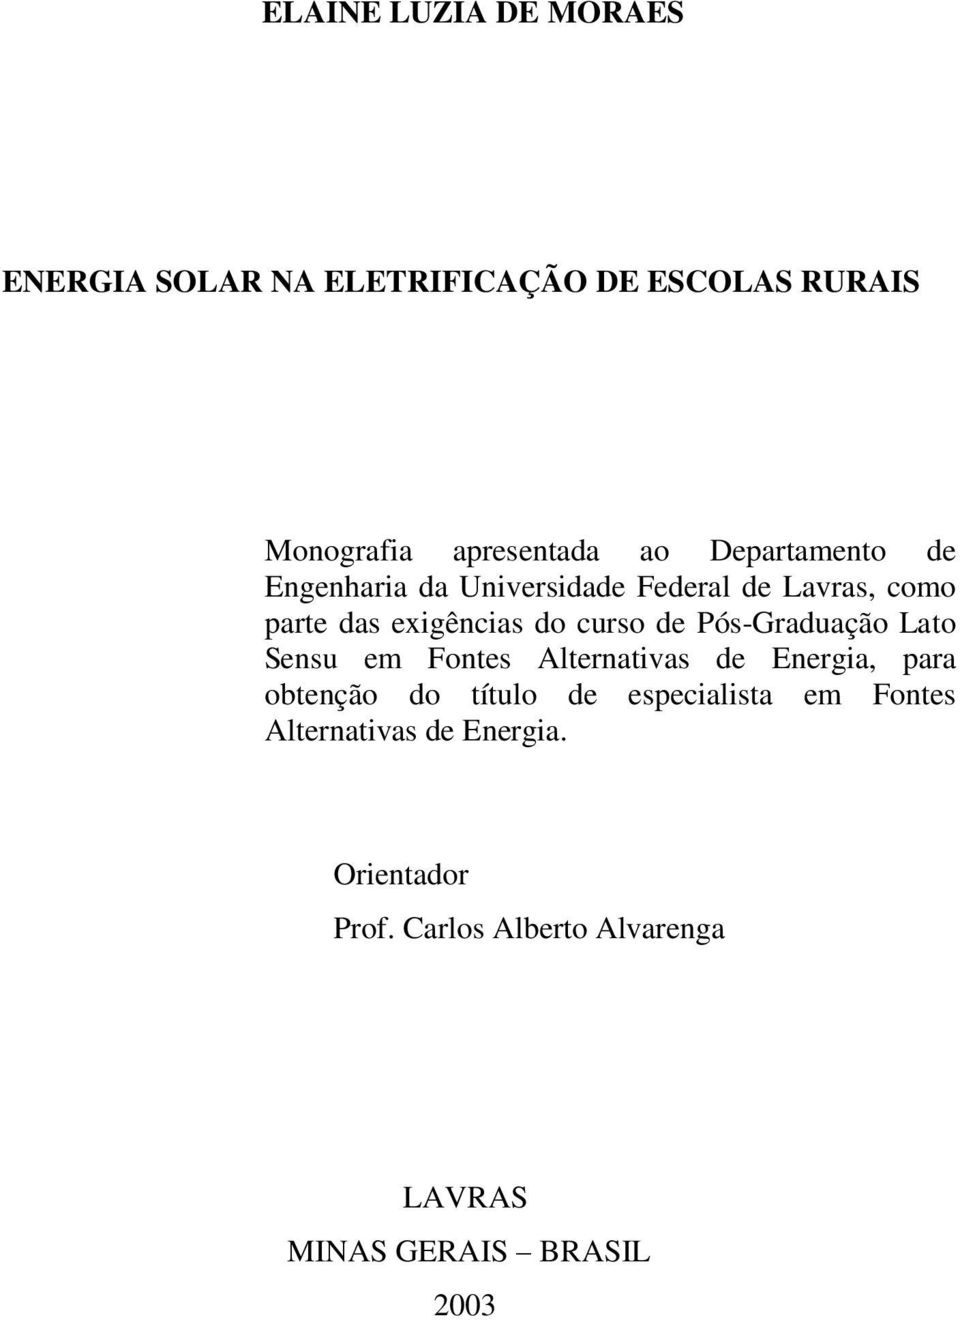 Pós-Graduação Lato Sensu em Fontes Alternativas de Energia, para obtenção do título de especialista